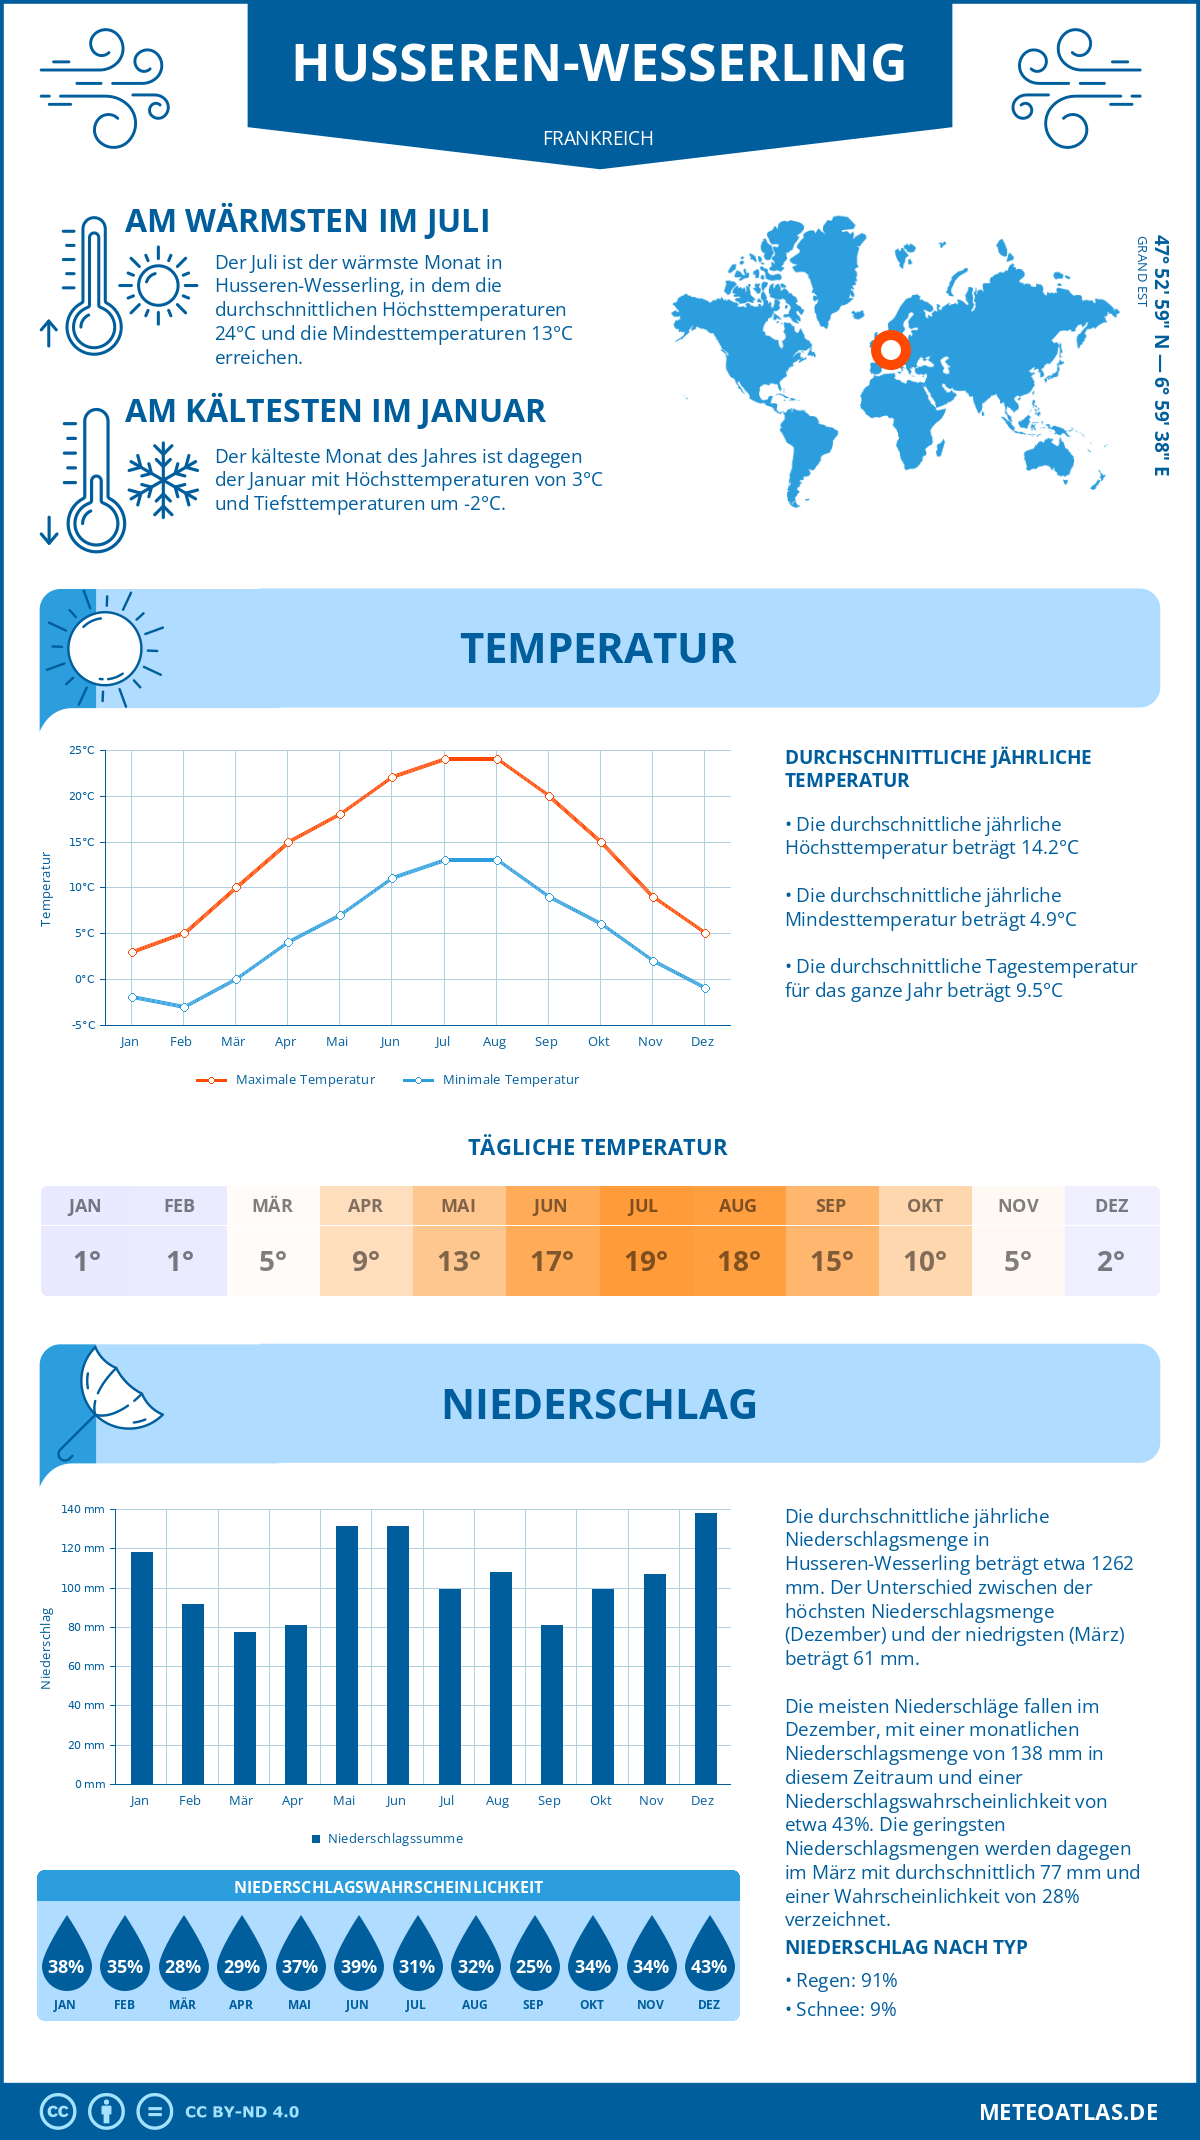 Wetter Husseren-Wesserling (Frankreich) - Temperatur und Niederschlag